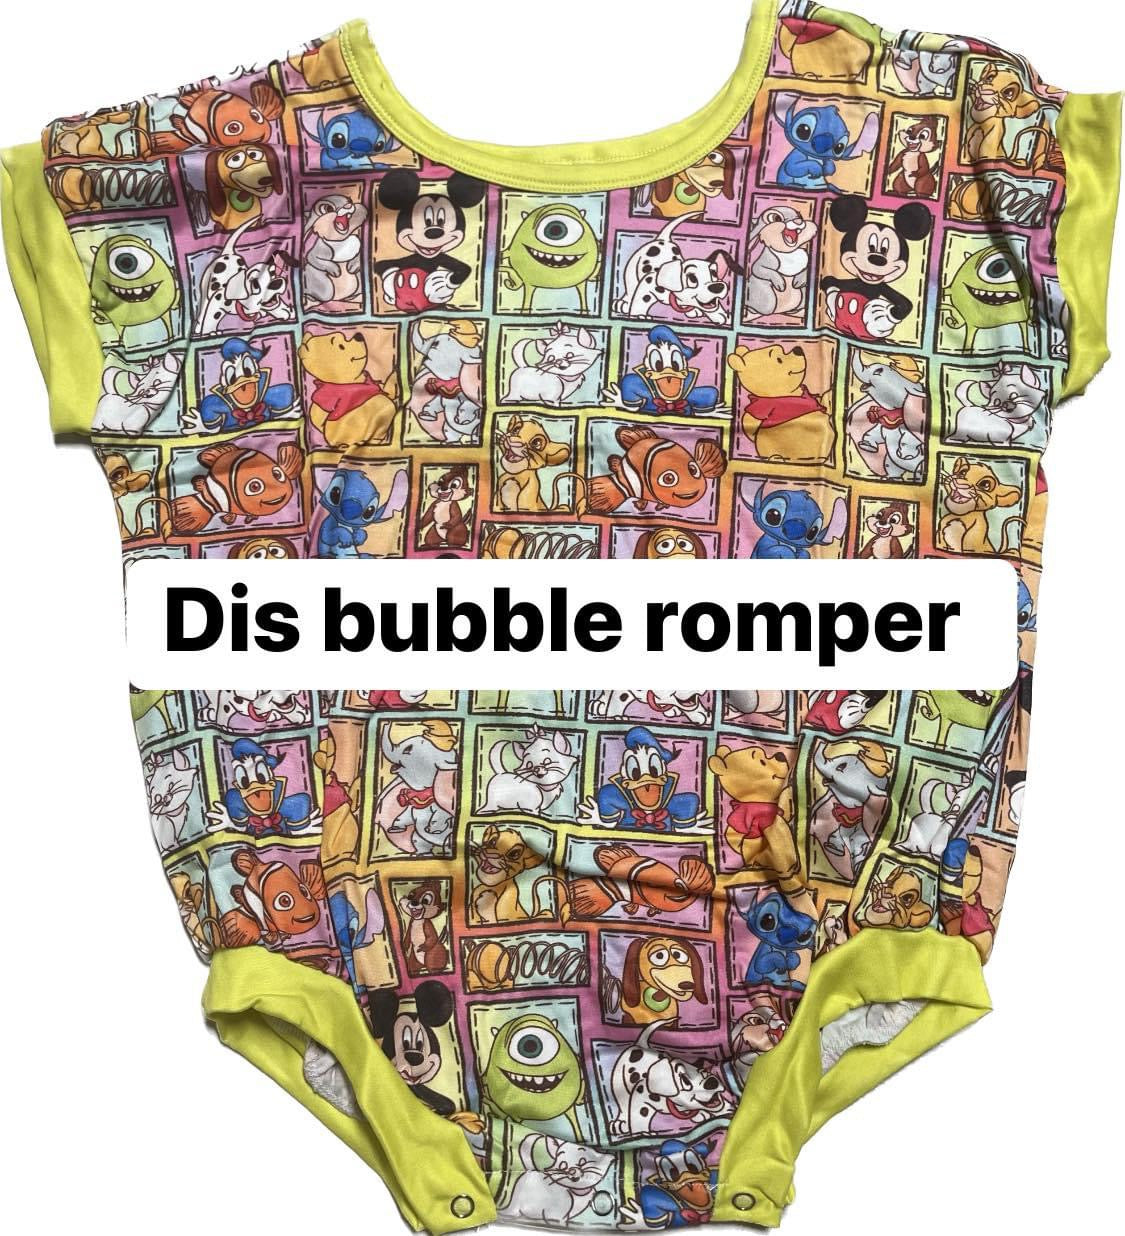 Happy Bubble romper